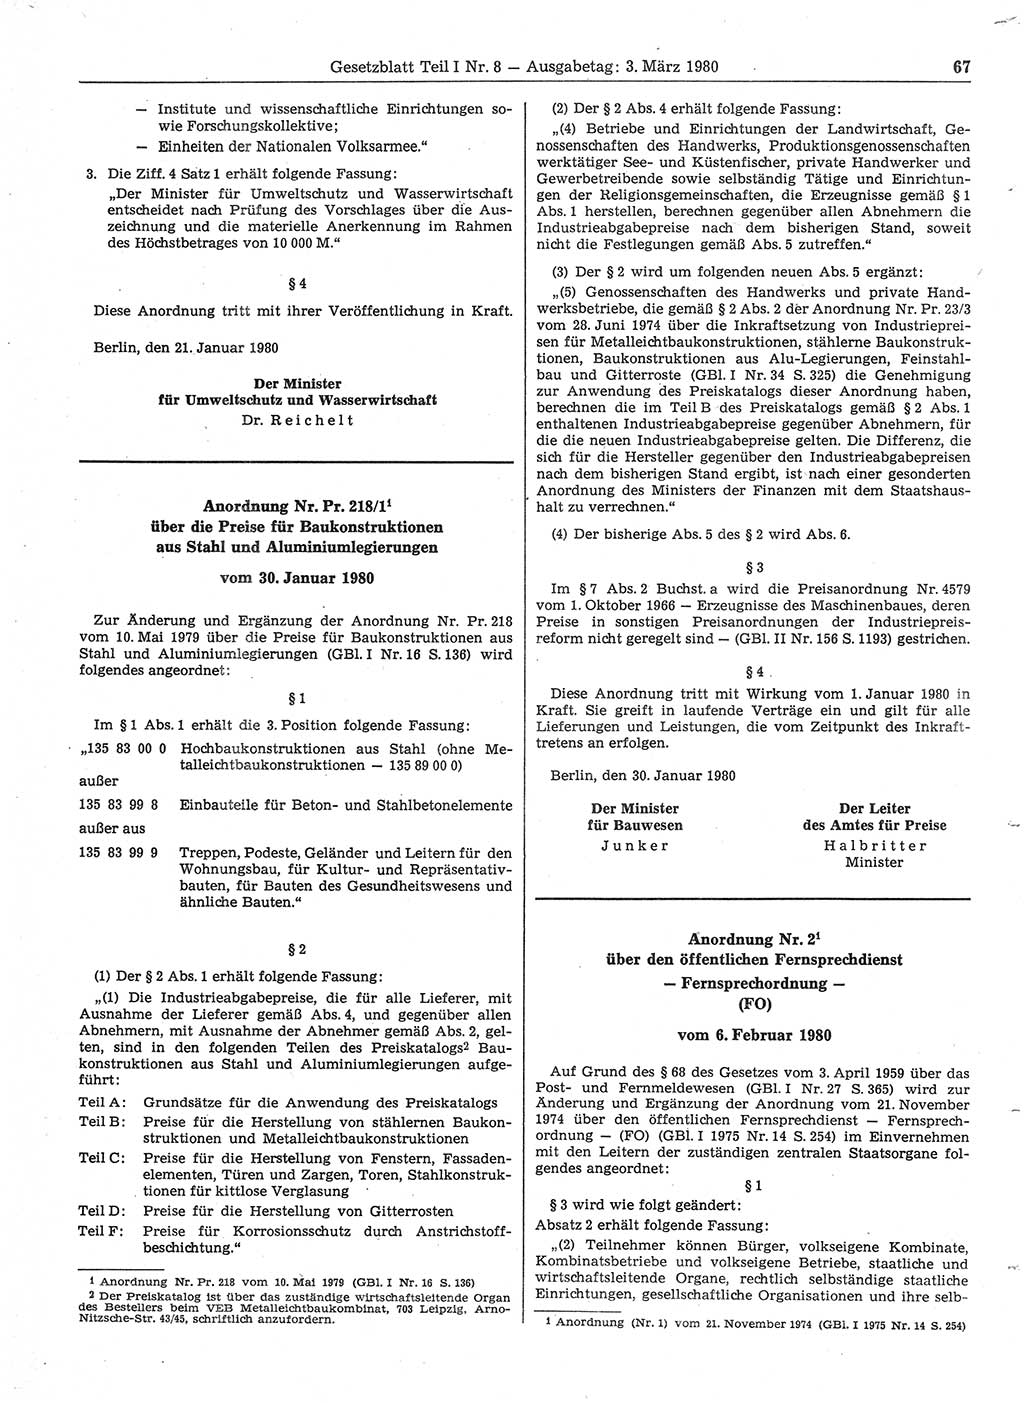 Gesetzblatt (GBl.) der Deutschen Demokratischen Republik (DDR) Teil Ⅰ 1980, Seite 67 (GBl. DDR Ⅰ 1980, S. 67)